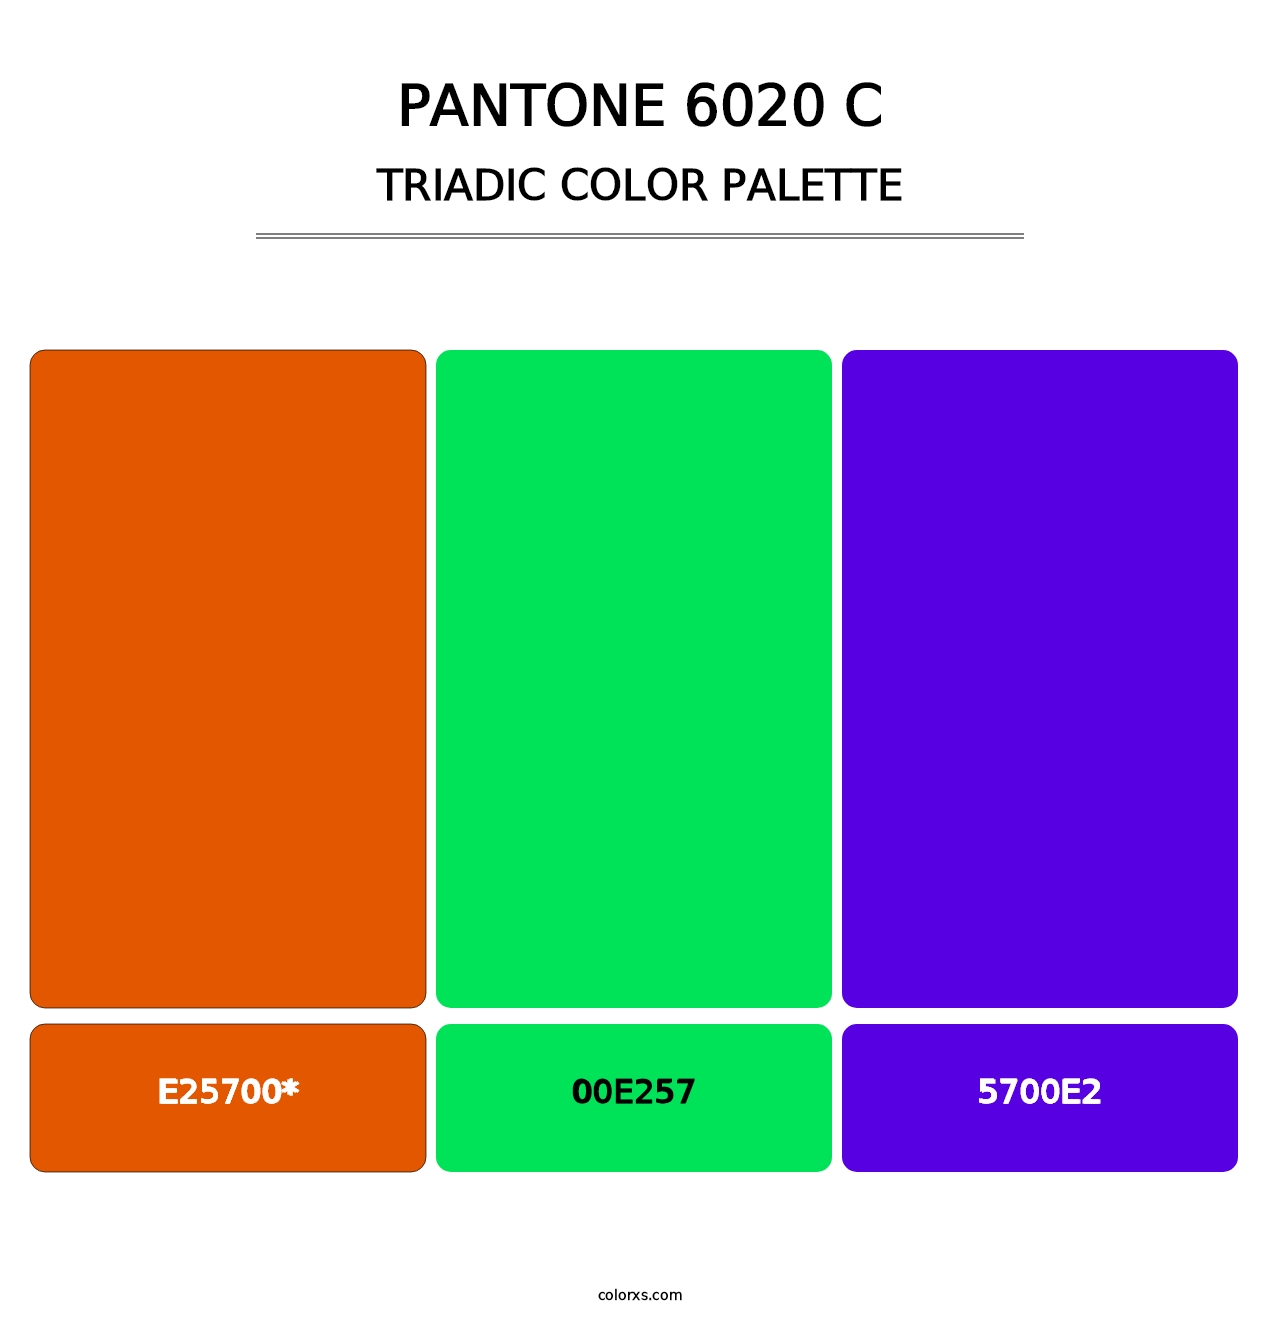 PANTONE 6020 C - Triadic Color Palette